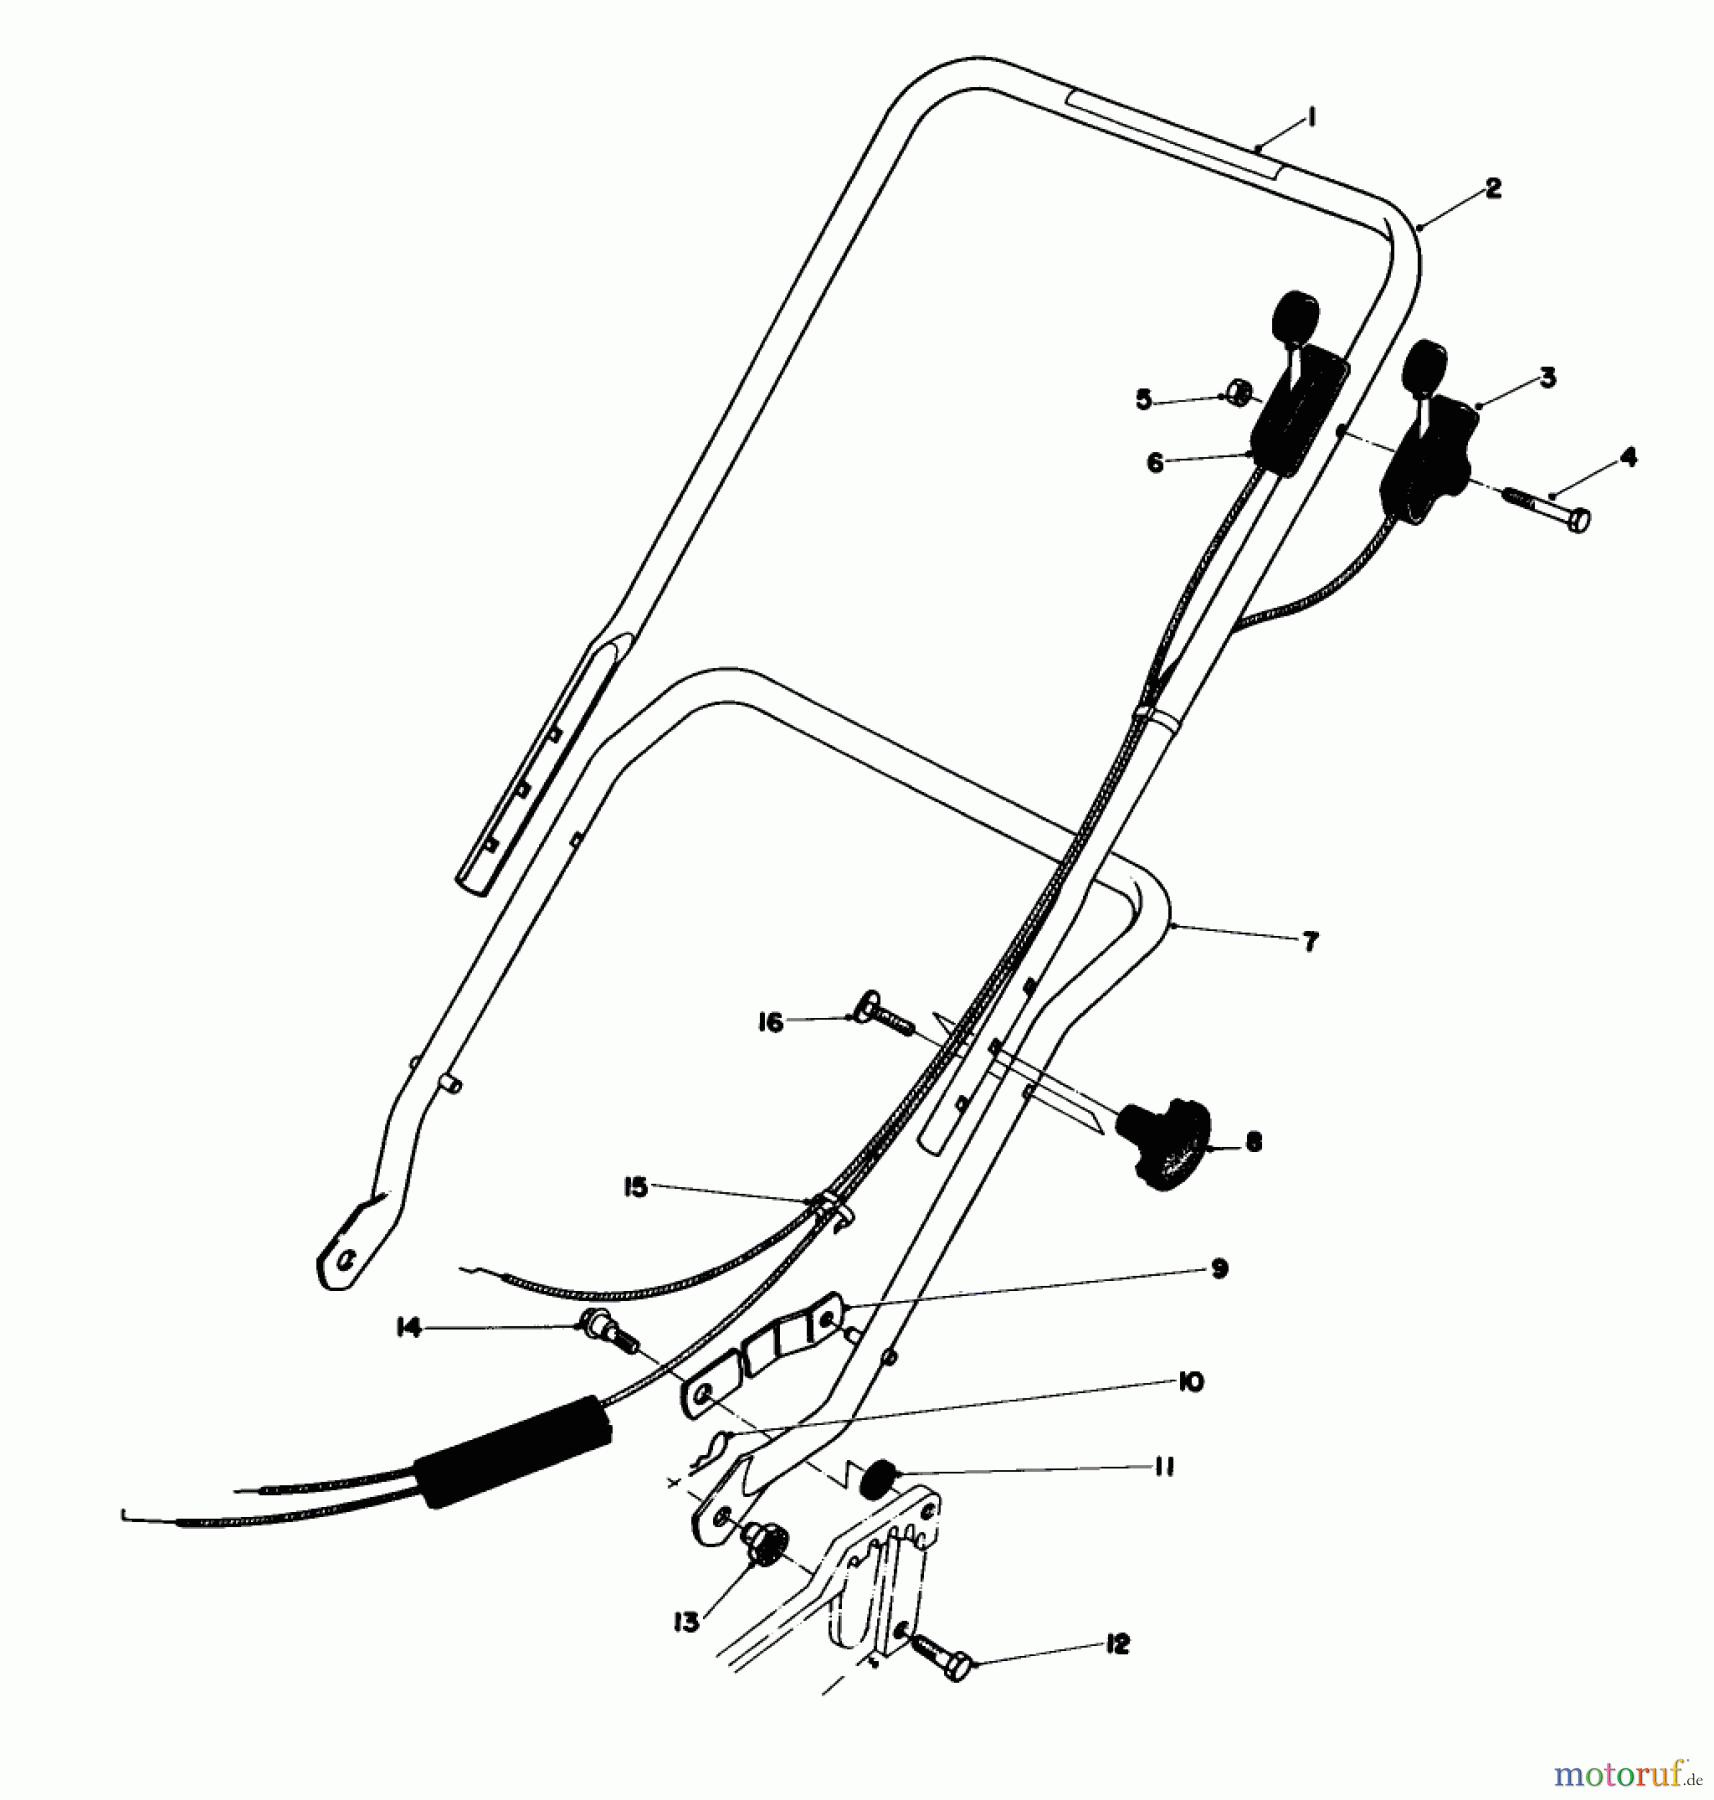  Toro Neu Mowers, Walk-Behind Seite 1 20770 - Toro Lawnmower, 1982 (2000001-2999999) HANDLE ASSEMBLY